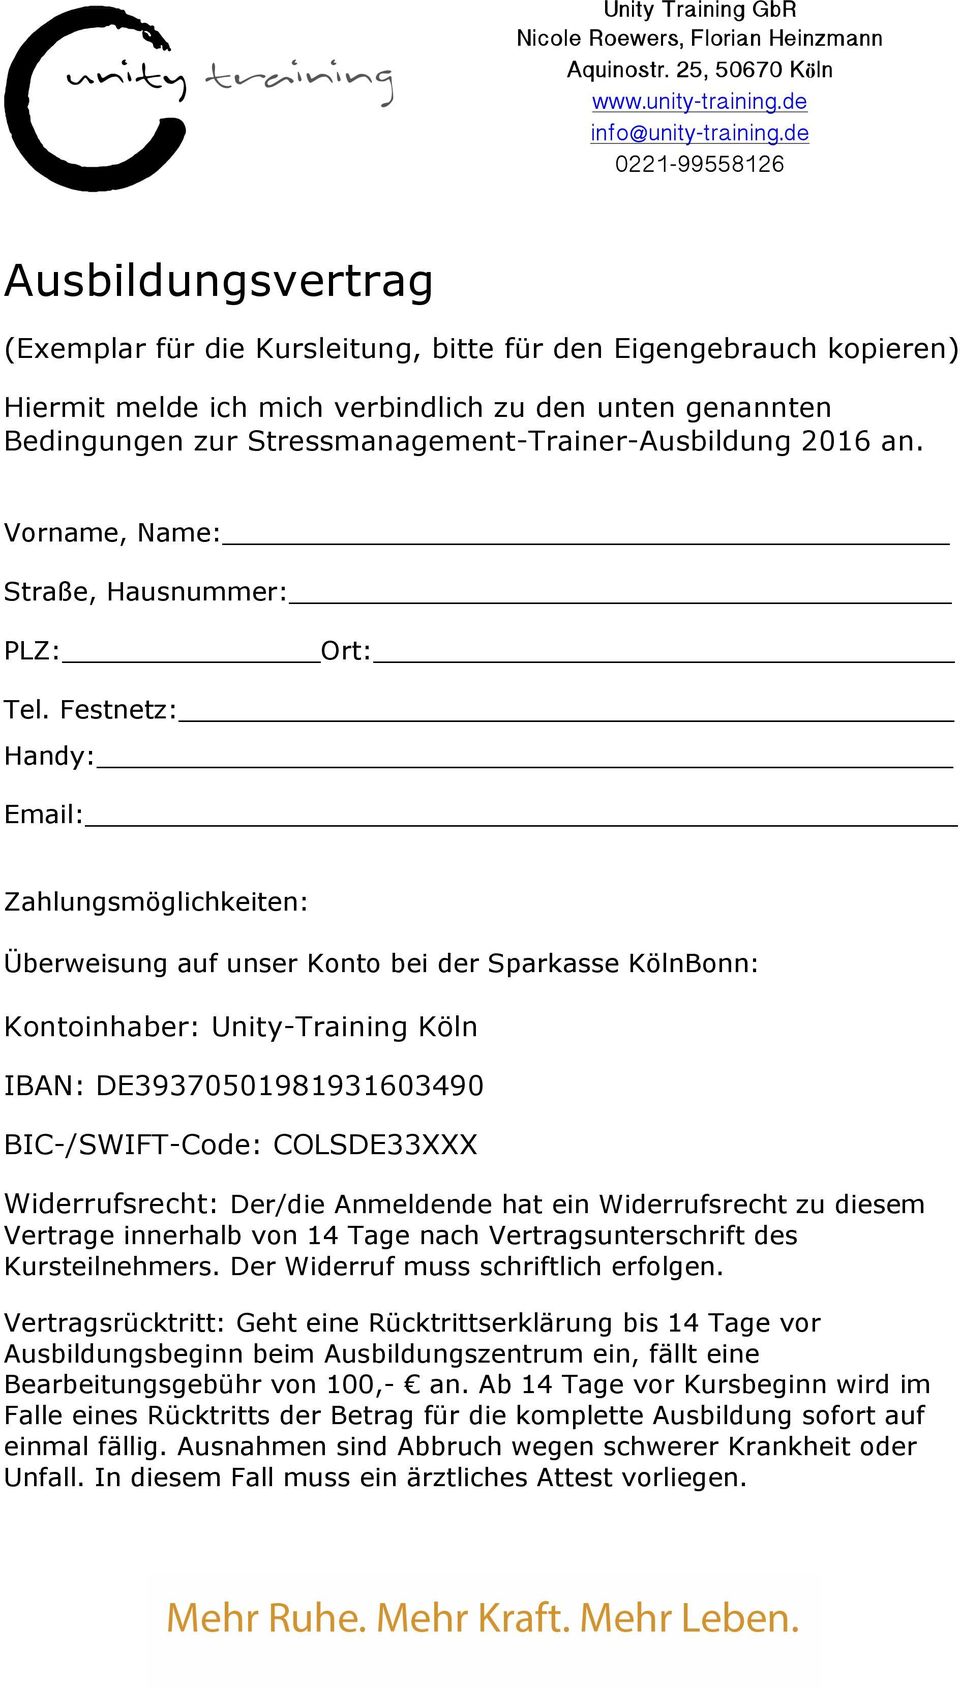 Festnetz: Handy: Email: Zahlungsmöglichkeiten: Überweisung auf unser Konto bei der Sparkasse KölnBonn: Kontoinhaber: Unity-Training Köln IBAN: DE39370501981931603490 BIC-/SWIFT-Code: COLSDE33XXX